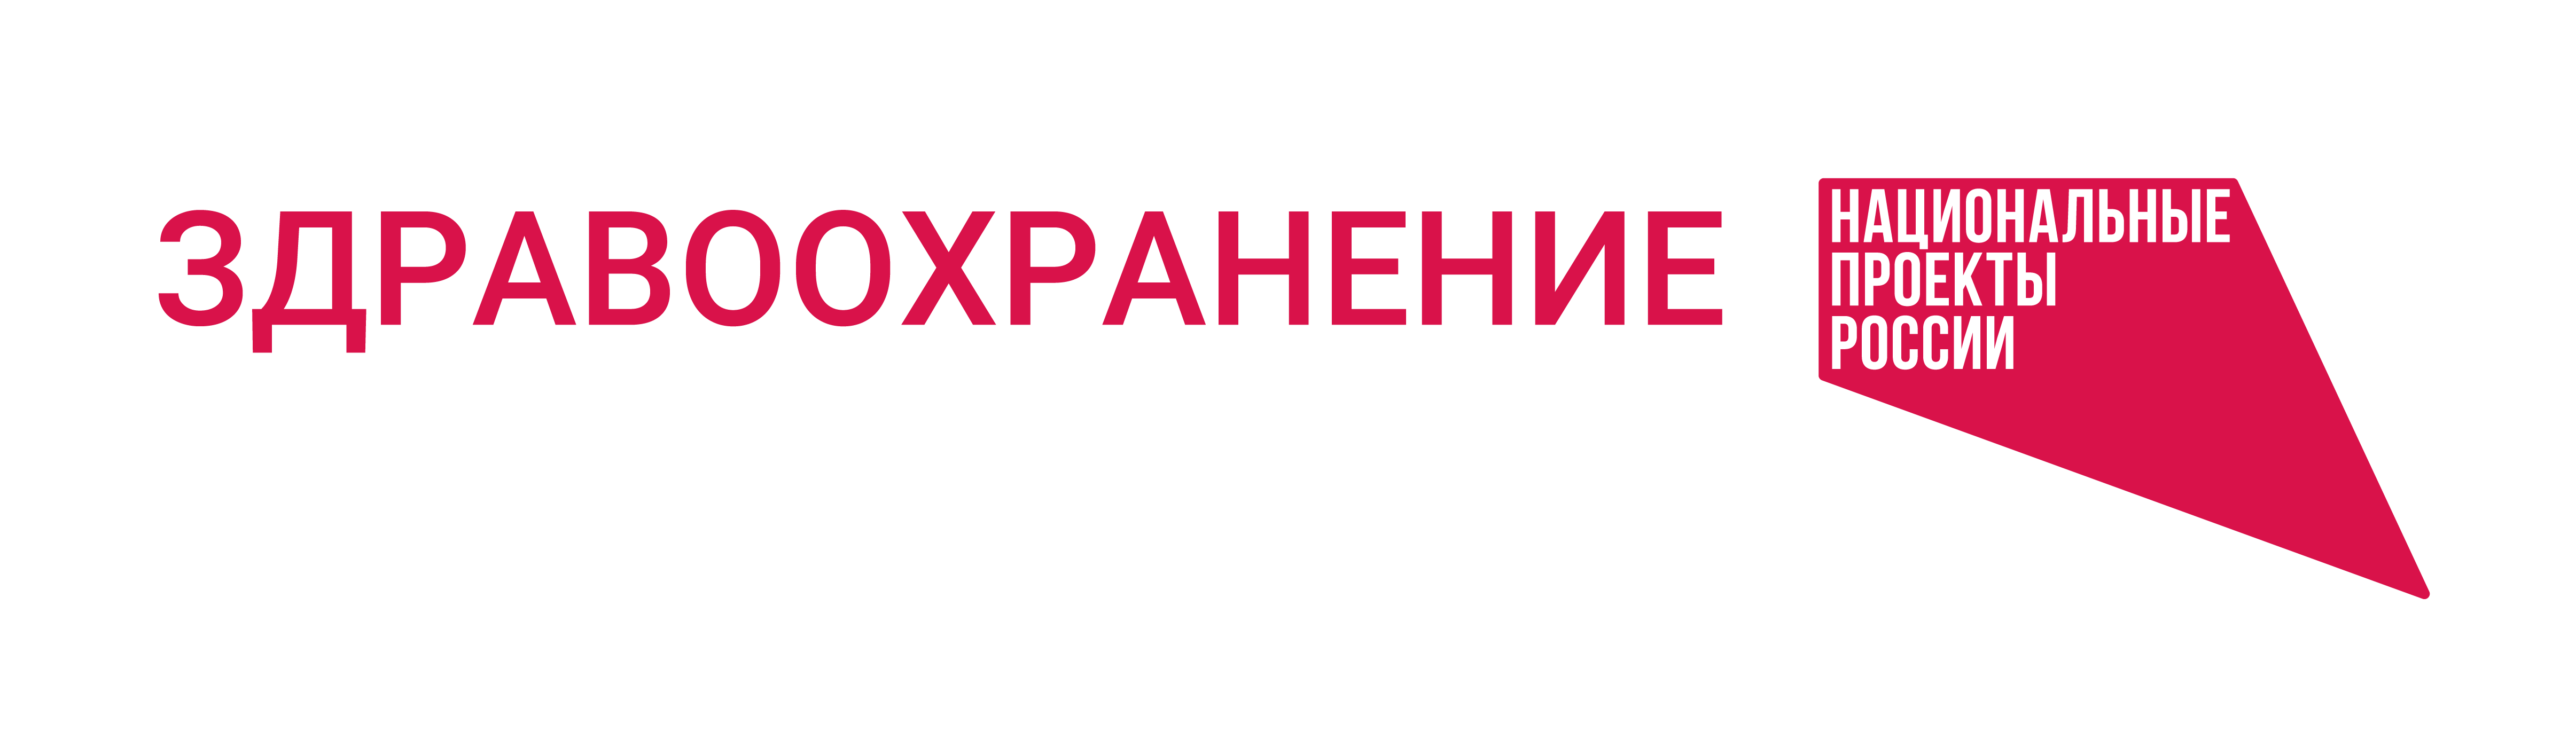 Баннер национальные проекты России - здравоохранение